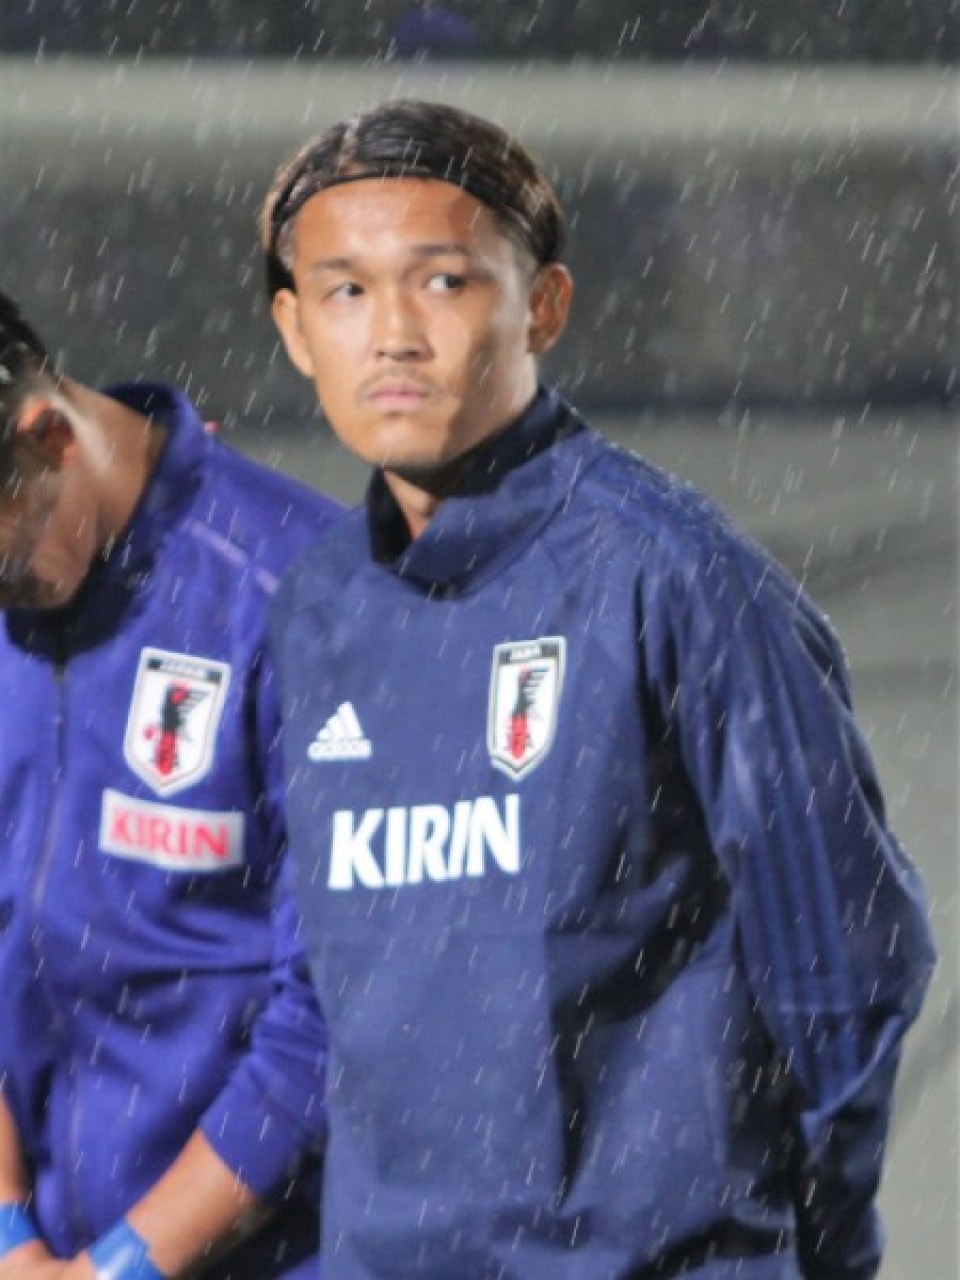 宇佐美貴史に 欧州サッカーで通用せず日本に帰った選手 Uefa日本人関係者の投稿にファン激怒 リアルライブ